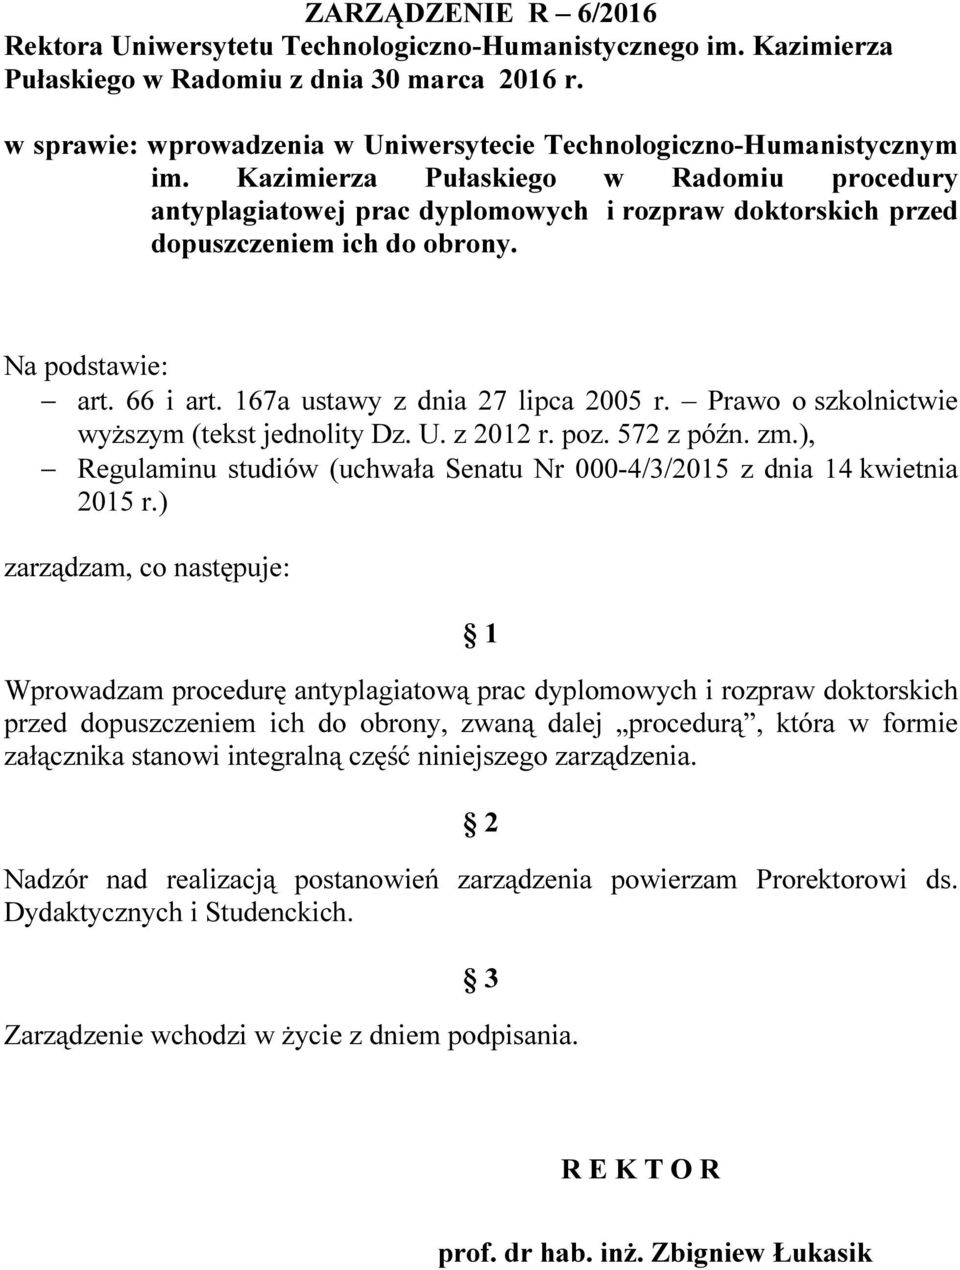 Kazimierza Pułaskiego w Radomiu procedury antyplagiatowej prac dyplomowych i rozpraw doktorskich przed dopuszczeniem ich do obrony. Na podstawie: art. 66 i art. 167a ustawy z dnia 27 lipca 2005 r.